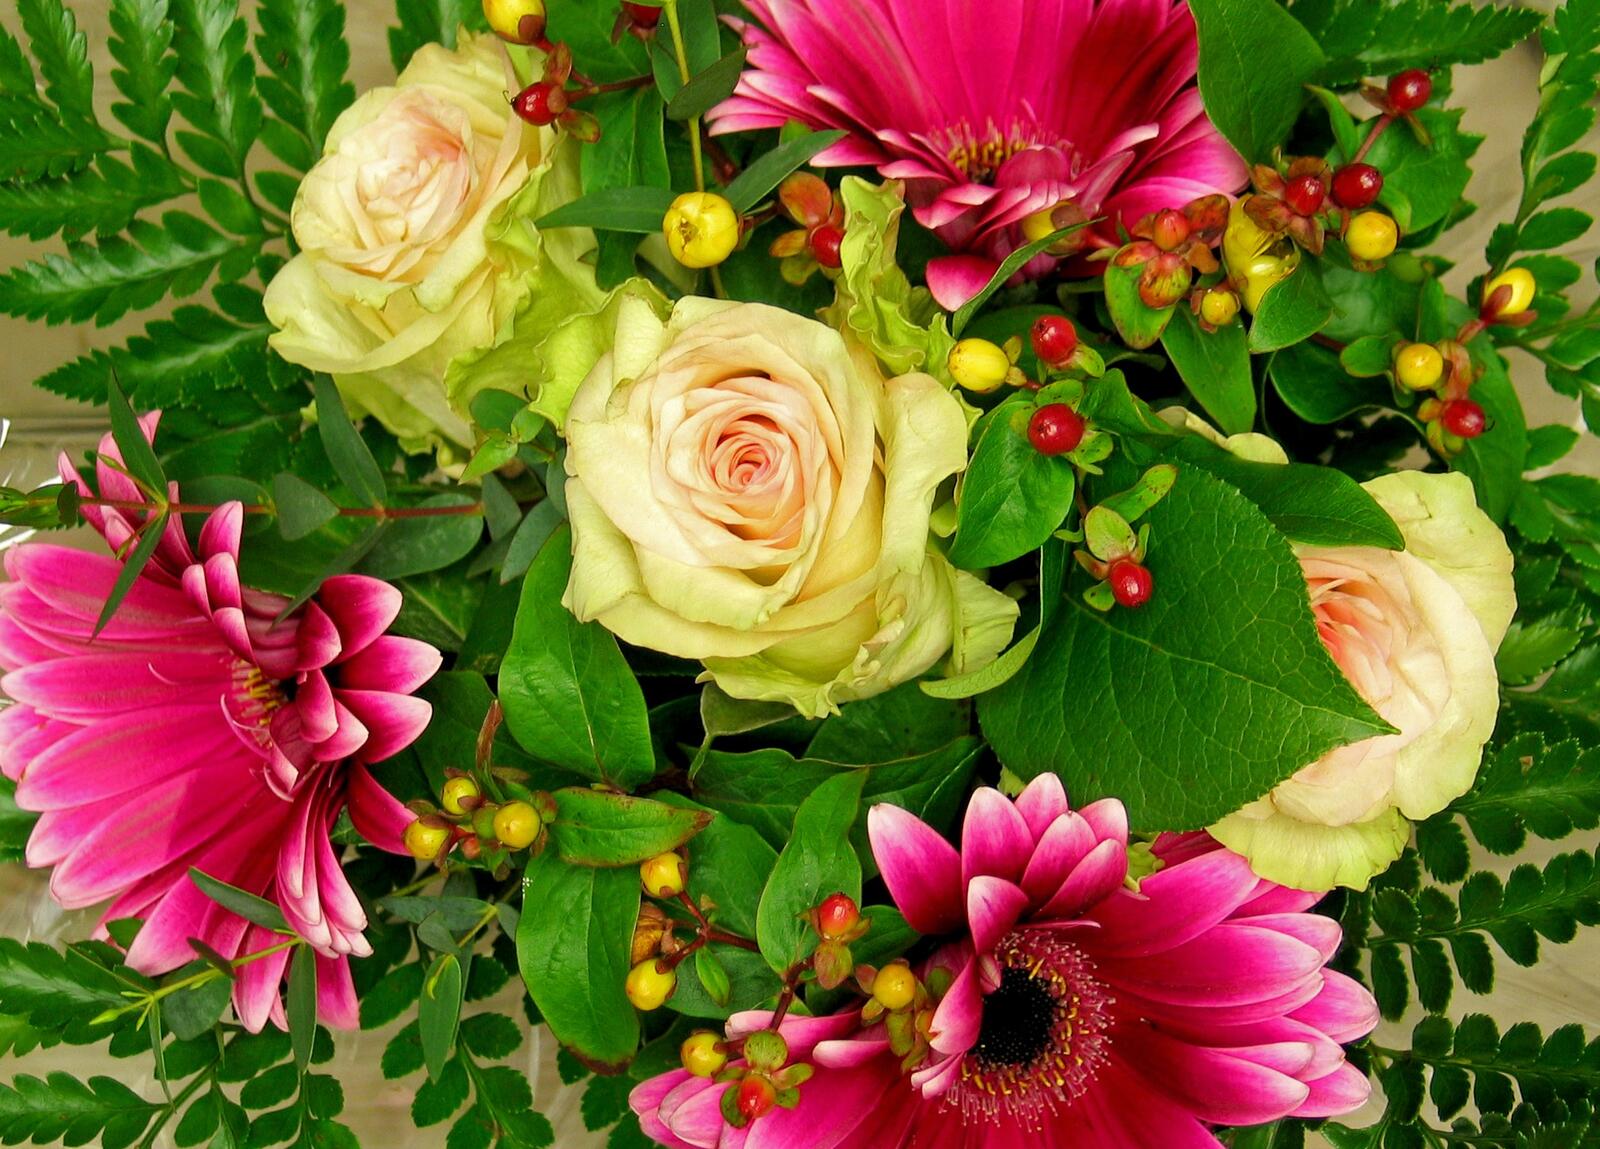 Обои цветочный цветочная композиция оригинал на рабочий стол